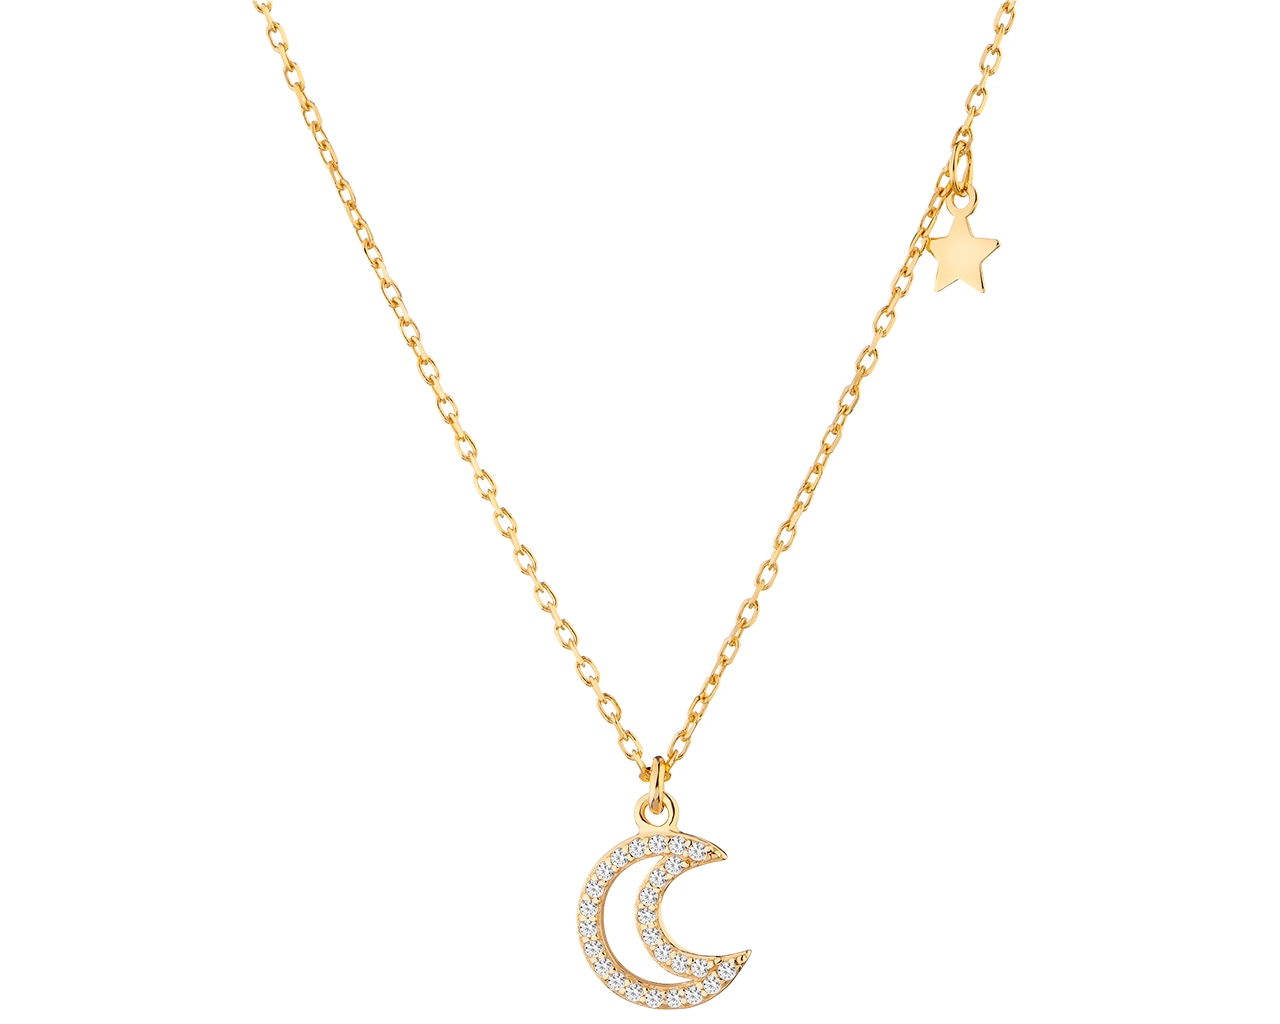 Naszyjnik srebrny z cyrkoniami - Księżyc, gwiazda